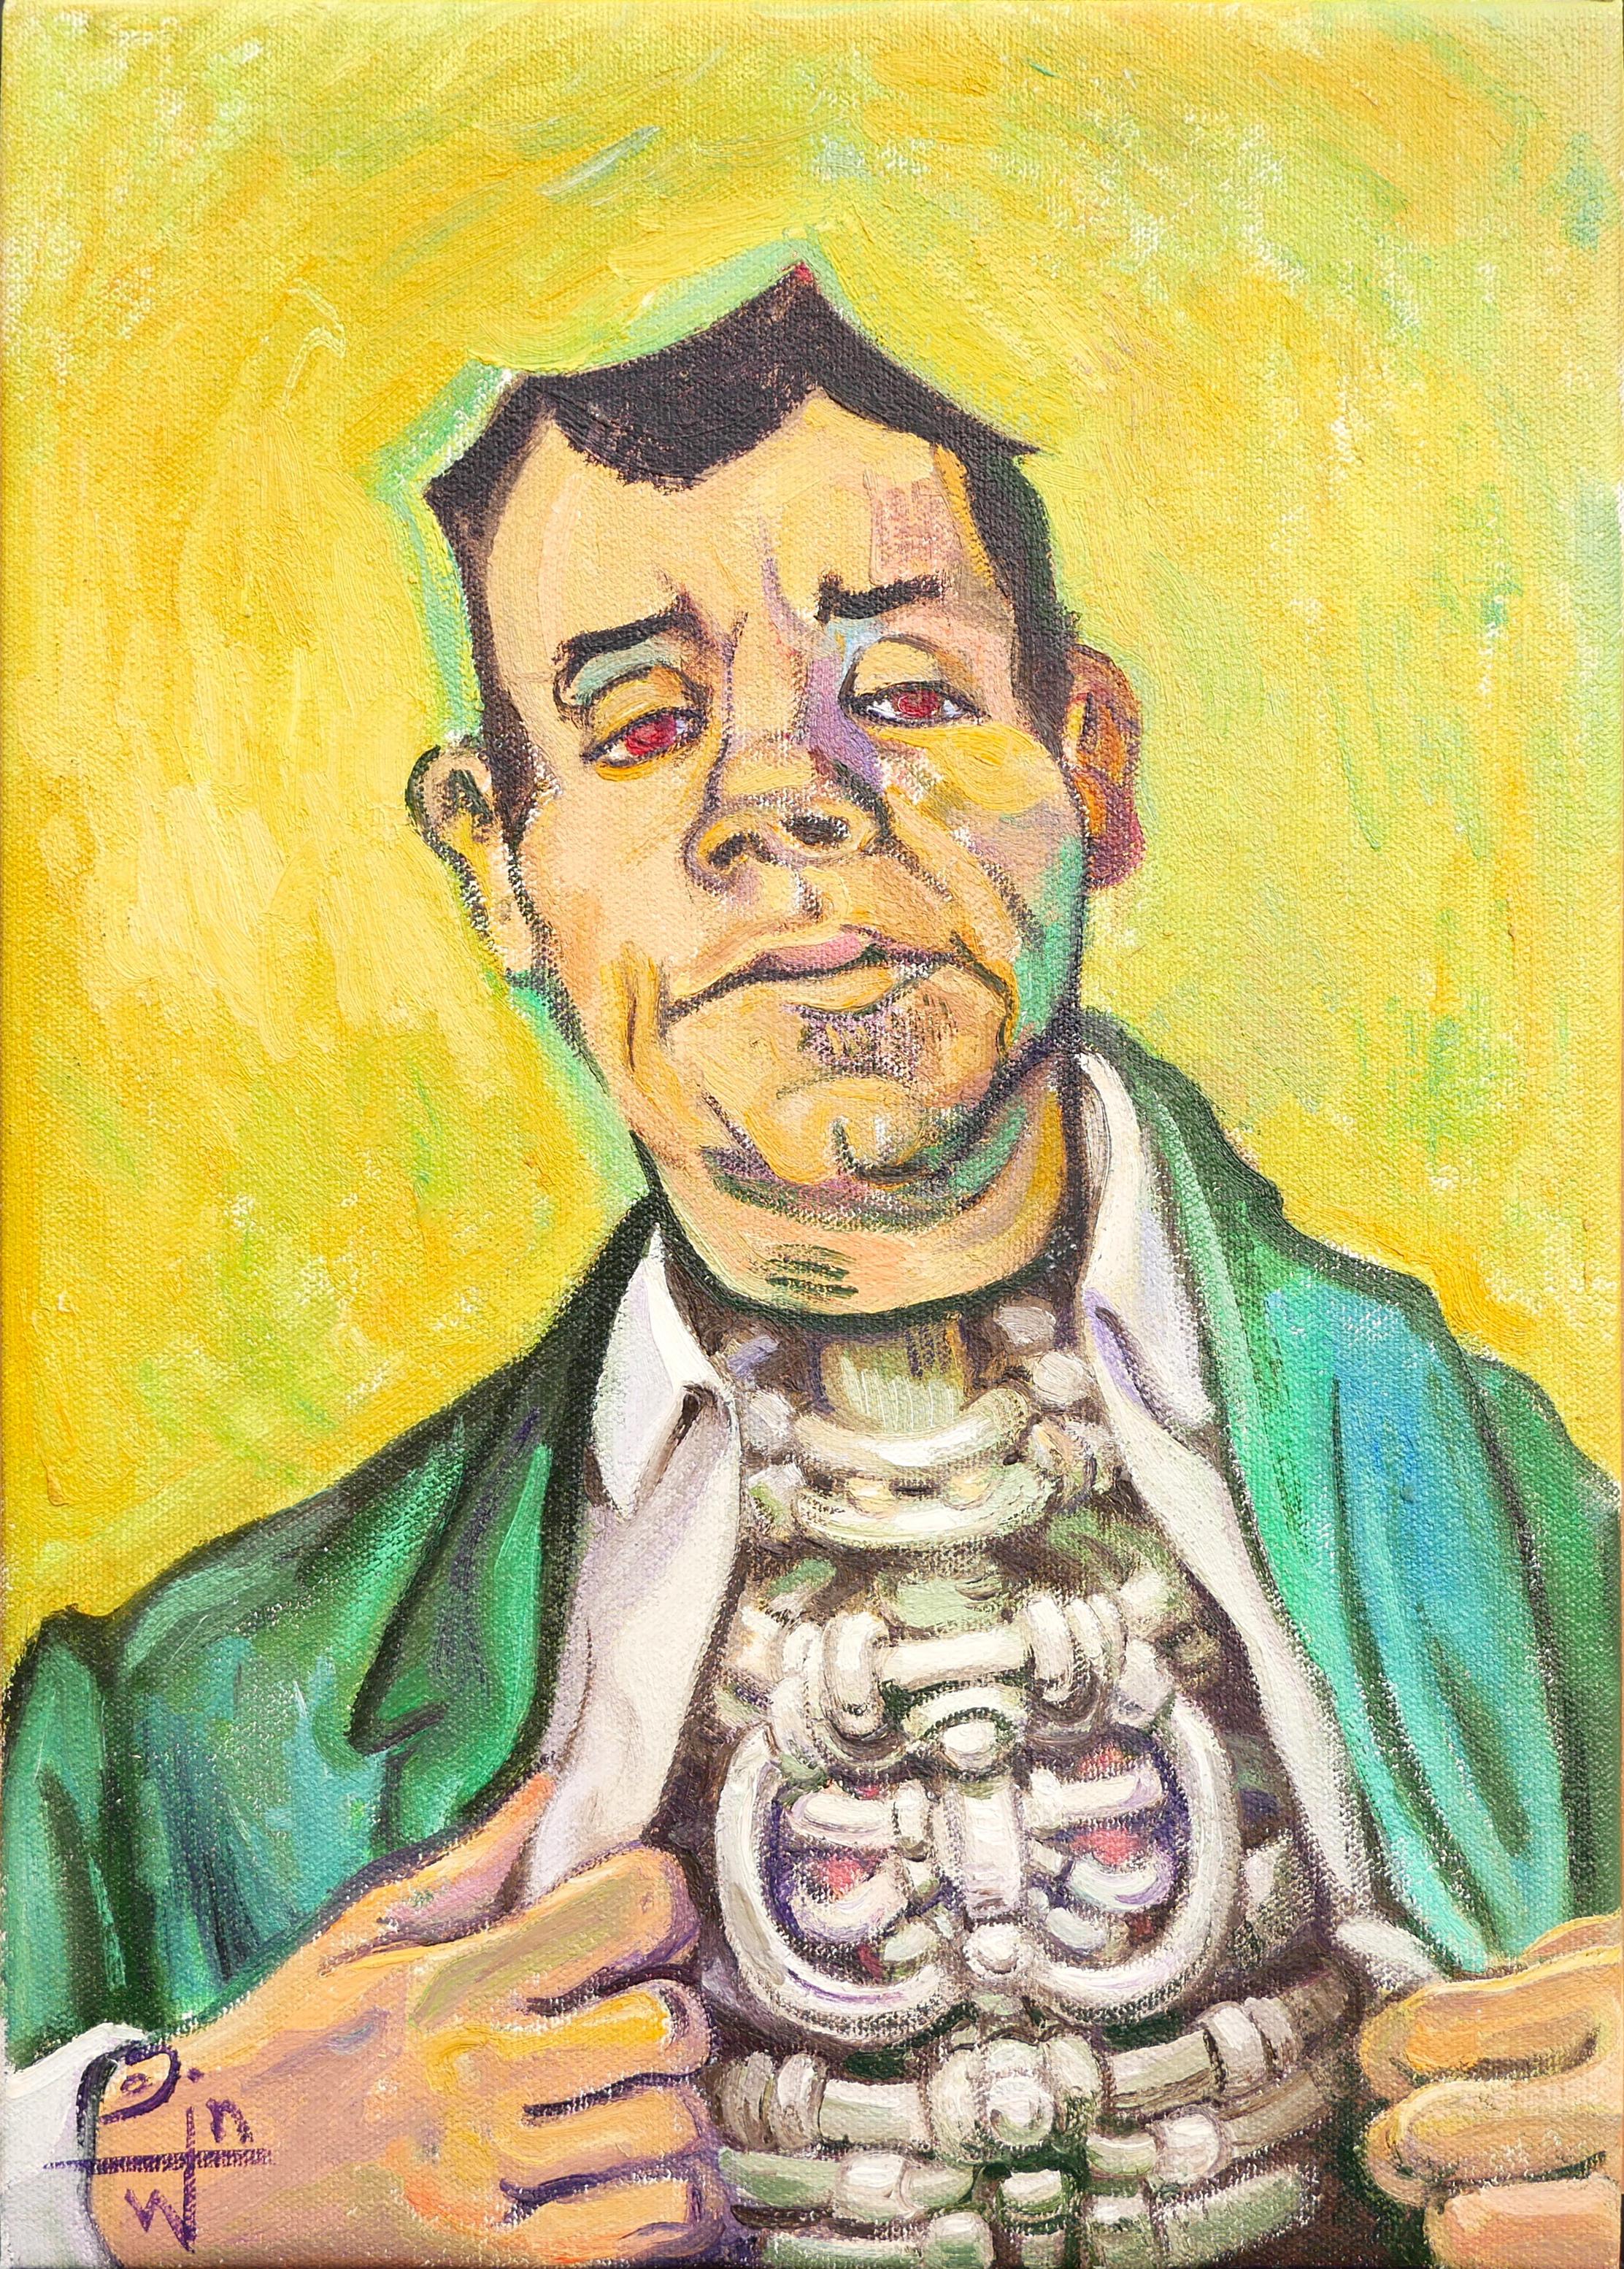 Henry David Potwin Portrait Painting – "Mechanisches Herz" Zeitgenössisches grünes und gelbes surrealistisches Porträtgemälde